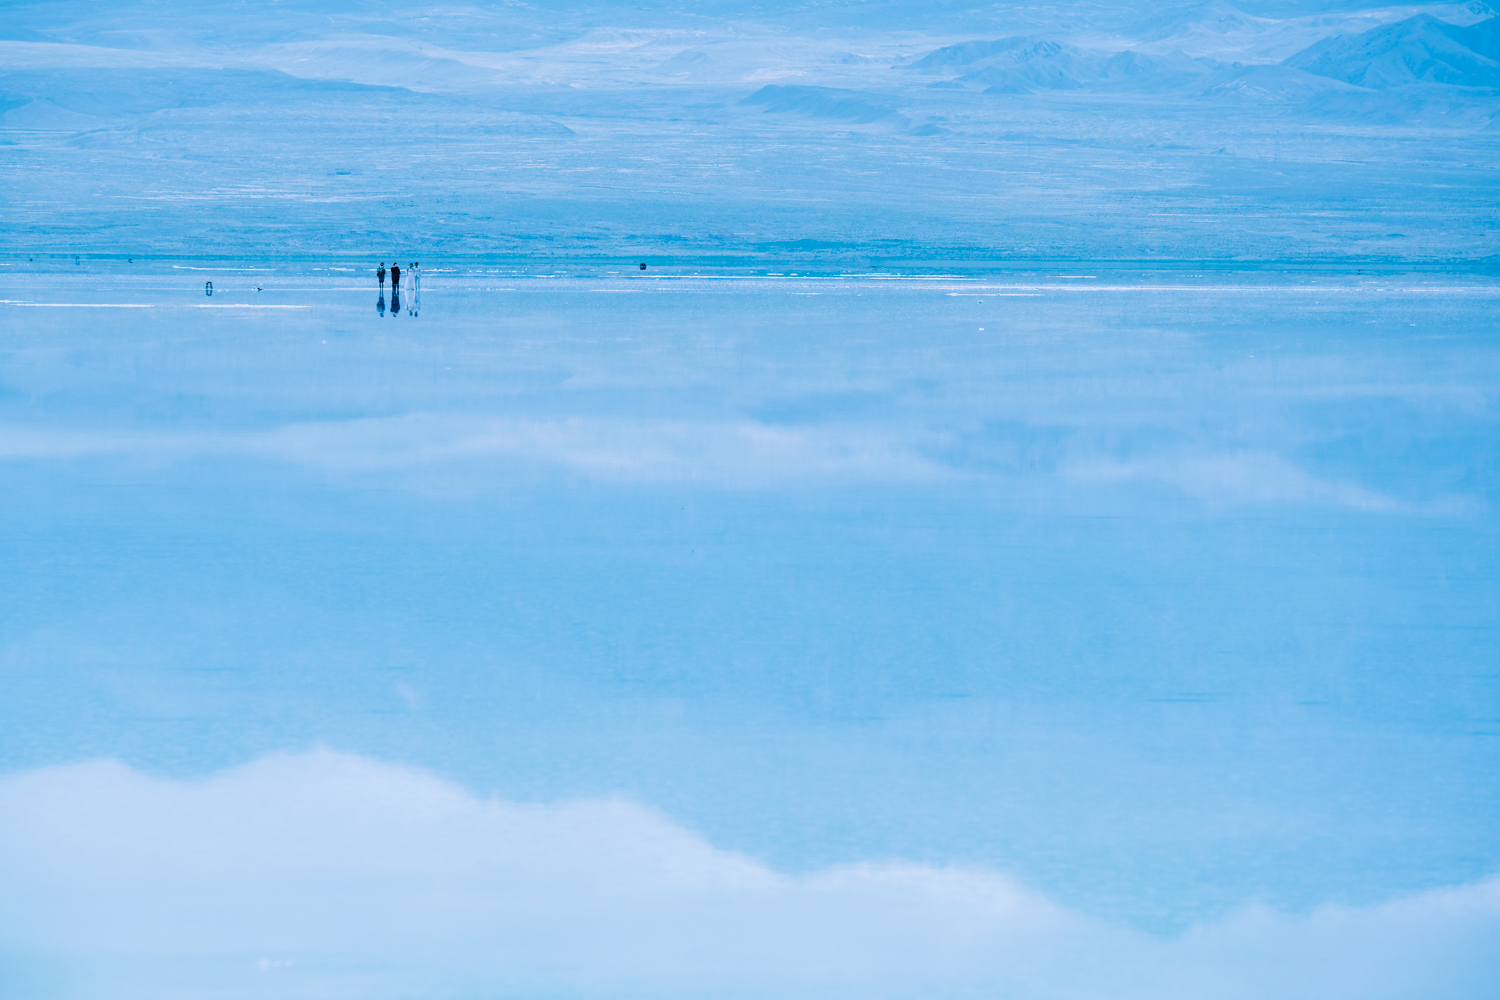 环刷青海湖是柚子轮滑每年夏天组织的一个固定长刷项目。每年我们用镜头对环刷进行记录，岁岁年年，风景与经历不尽相同。一起来，书写你自己的青海湖故事。点击查看青海湖的每个记录。